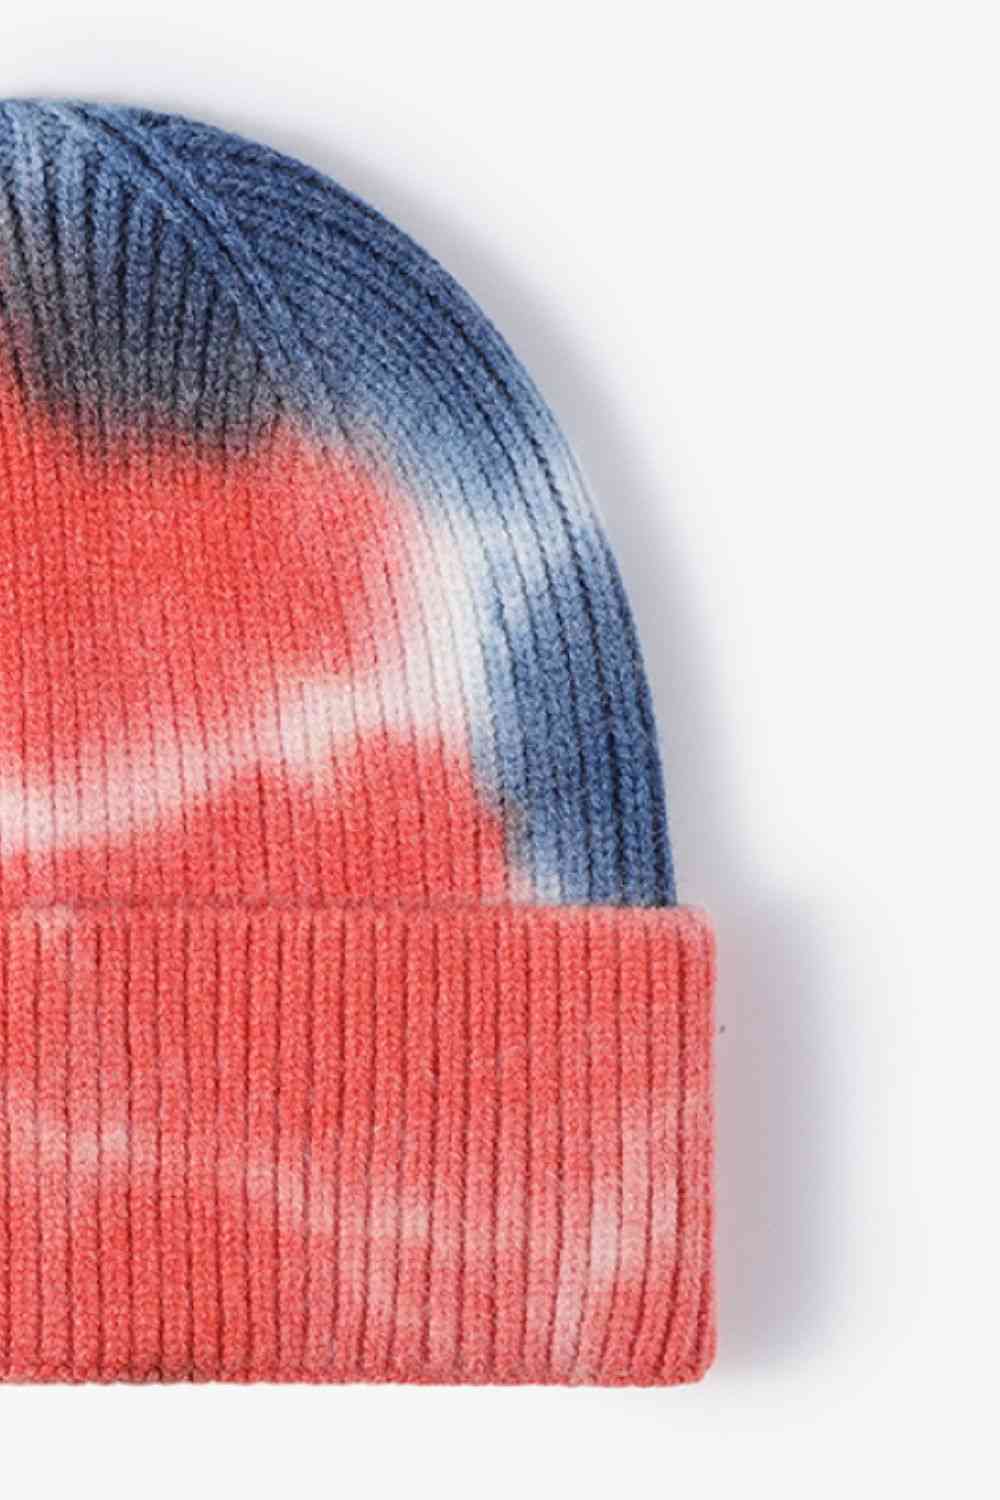 CHIC HATZ Tie-Dye Hat Cuffed Knit Beanie